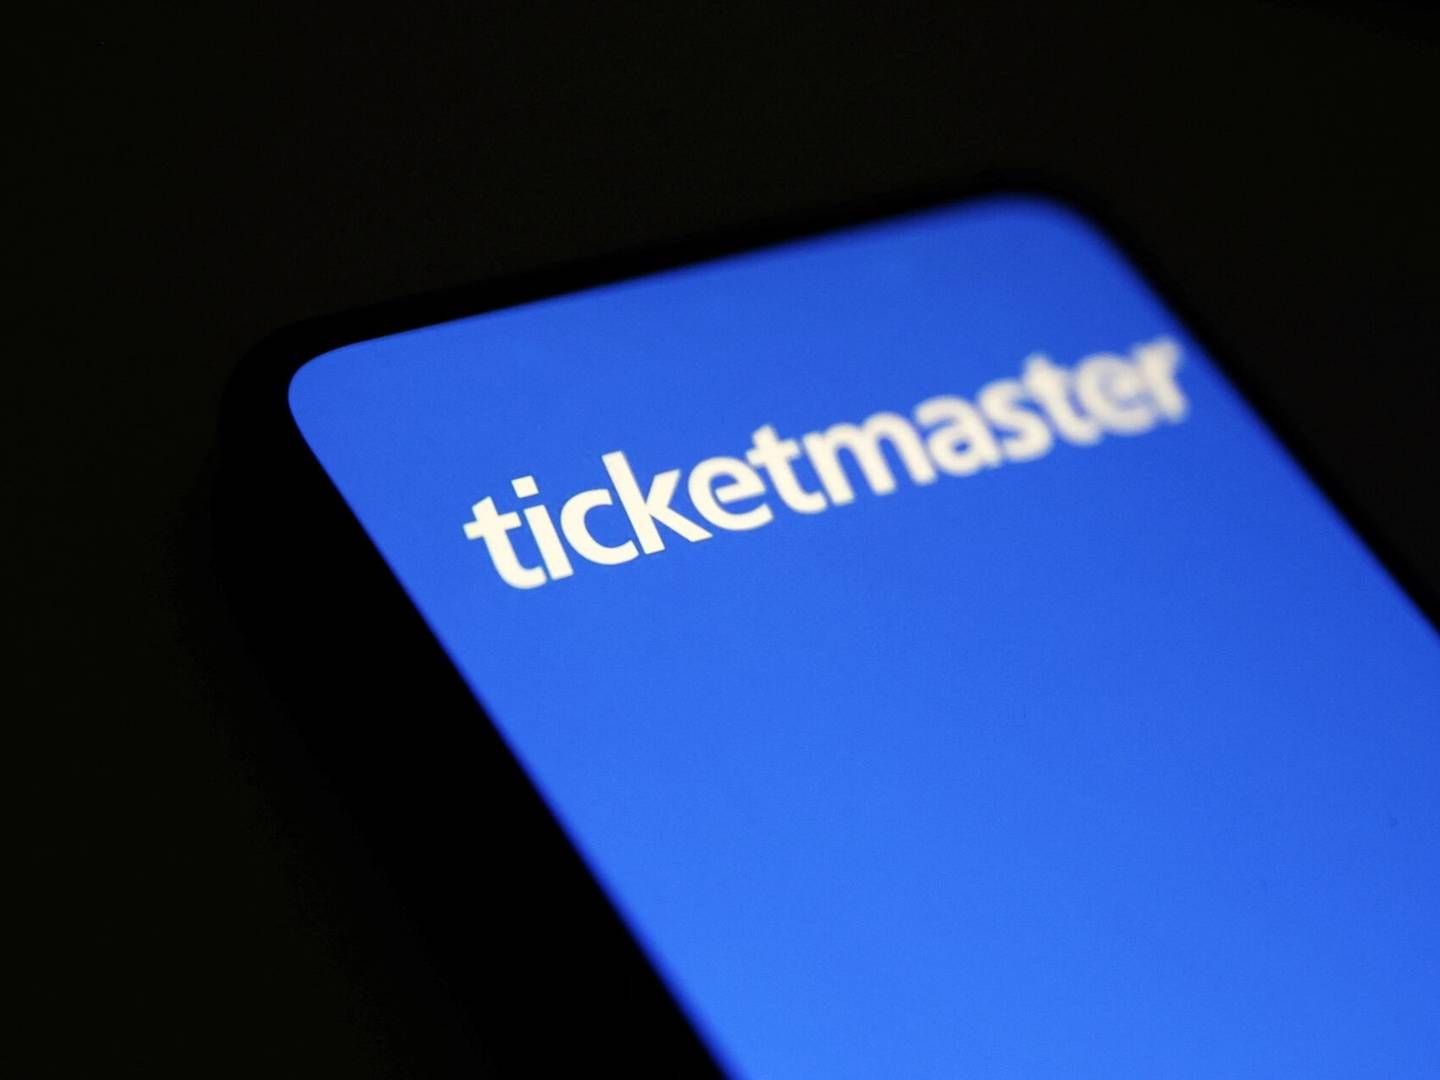 Det er for svært som bruger på Ticketmaster at slette sin profil, og det kan være i strid med loven. | Foto: Dado Ruvic/Reuters/Ritzau Scanpix